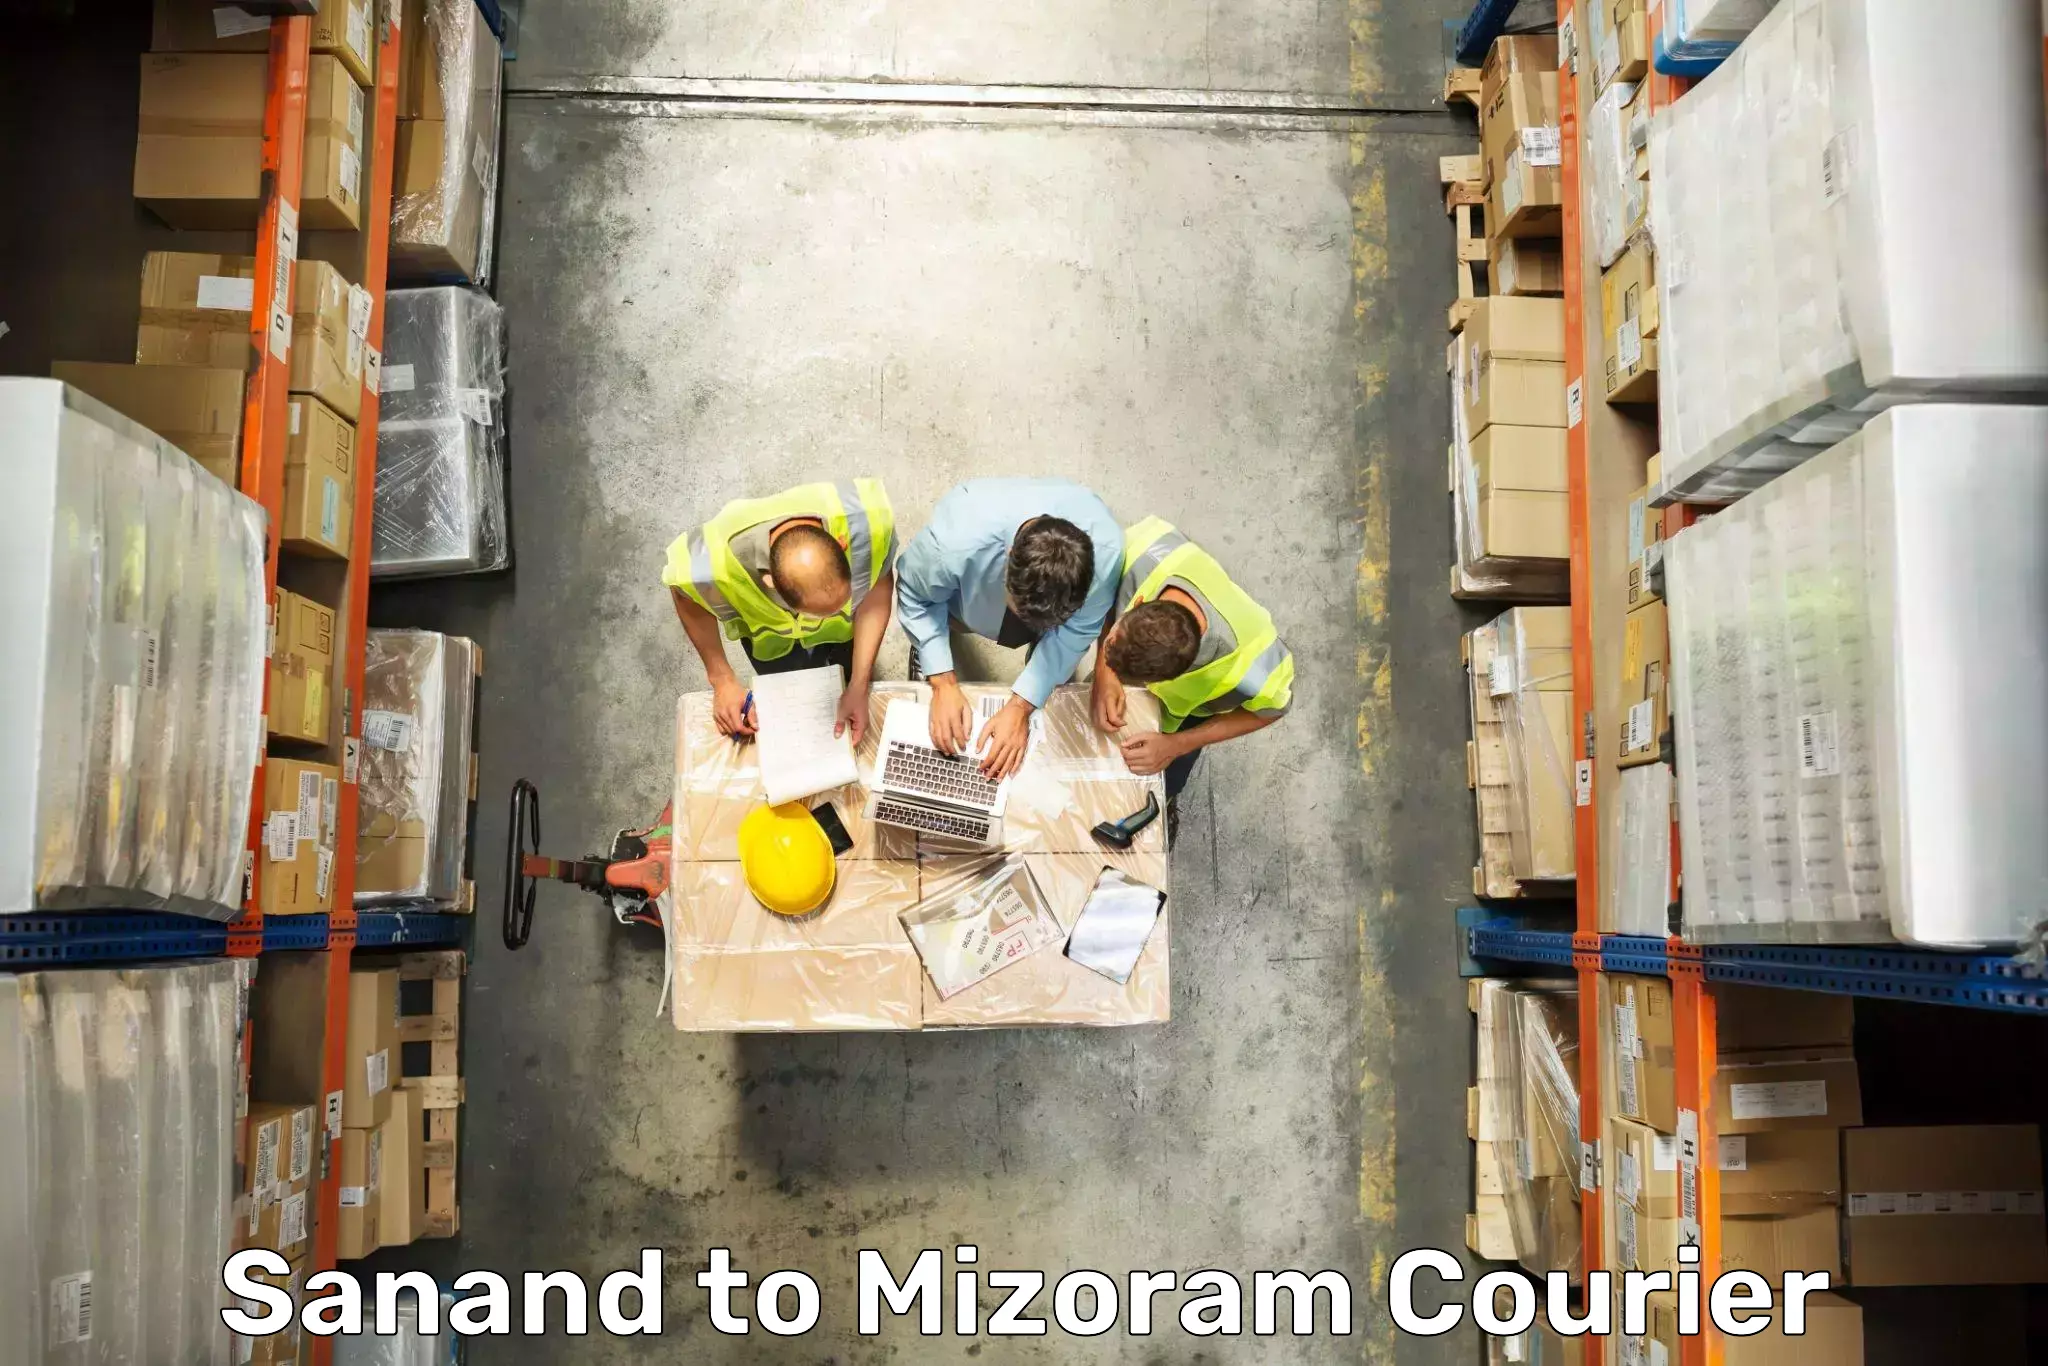 Luggage shipment specialists Sanand to Mizoram